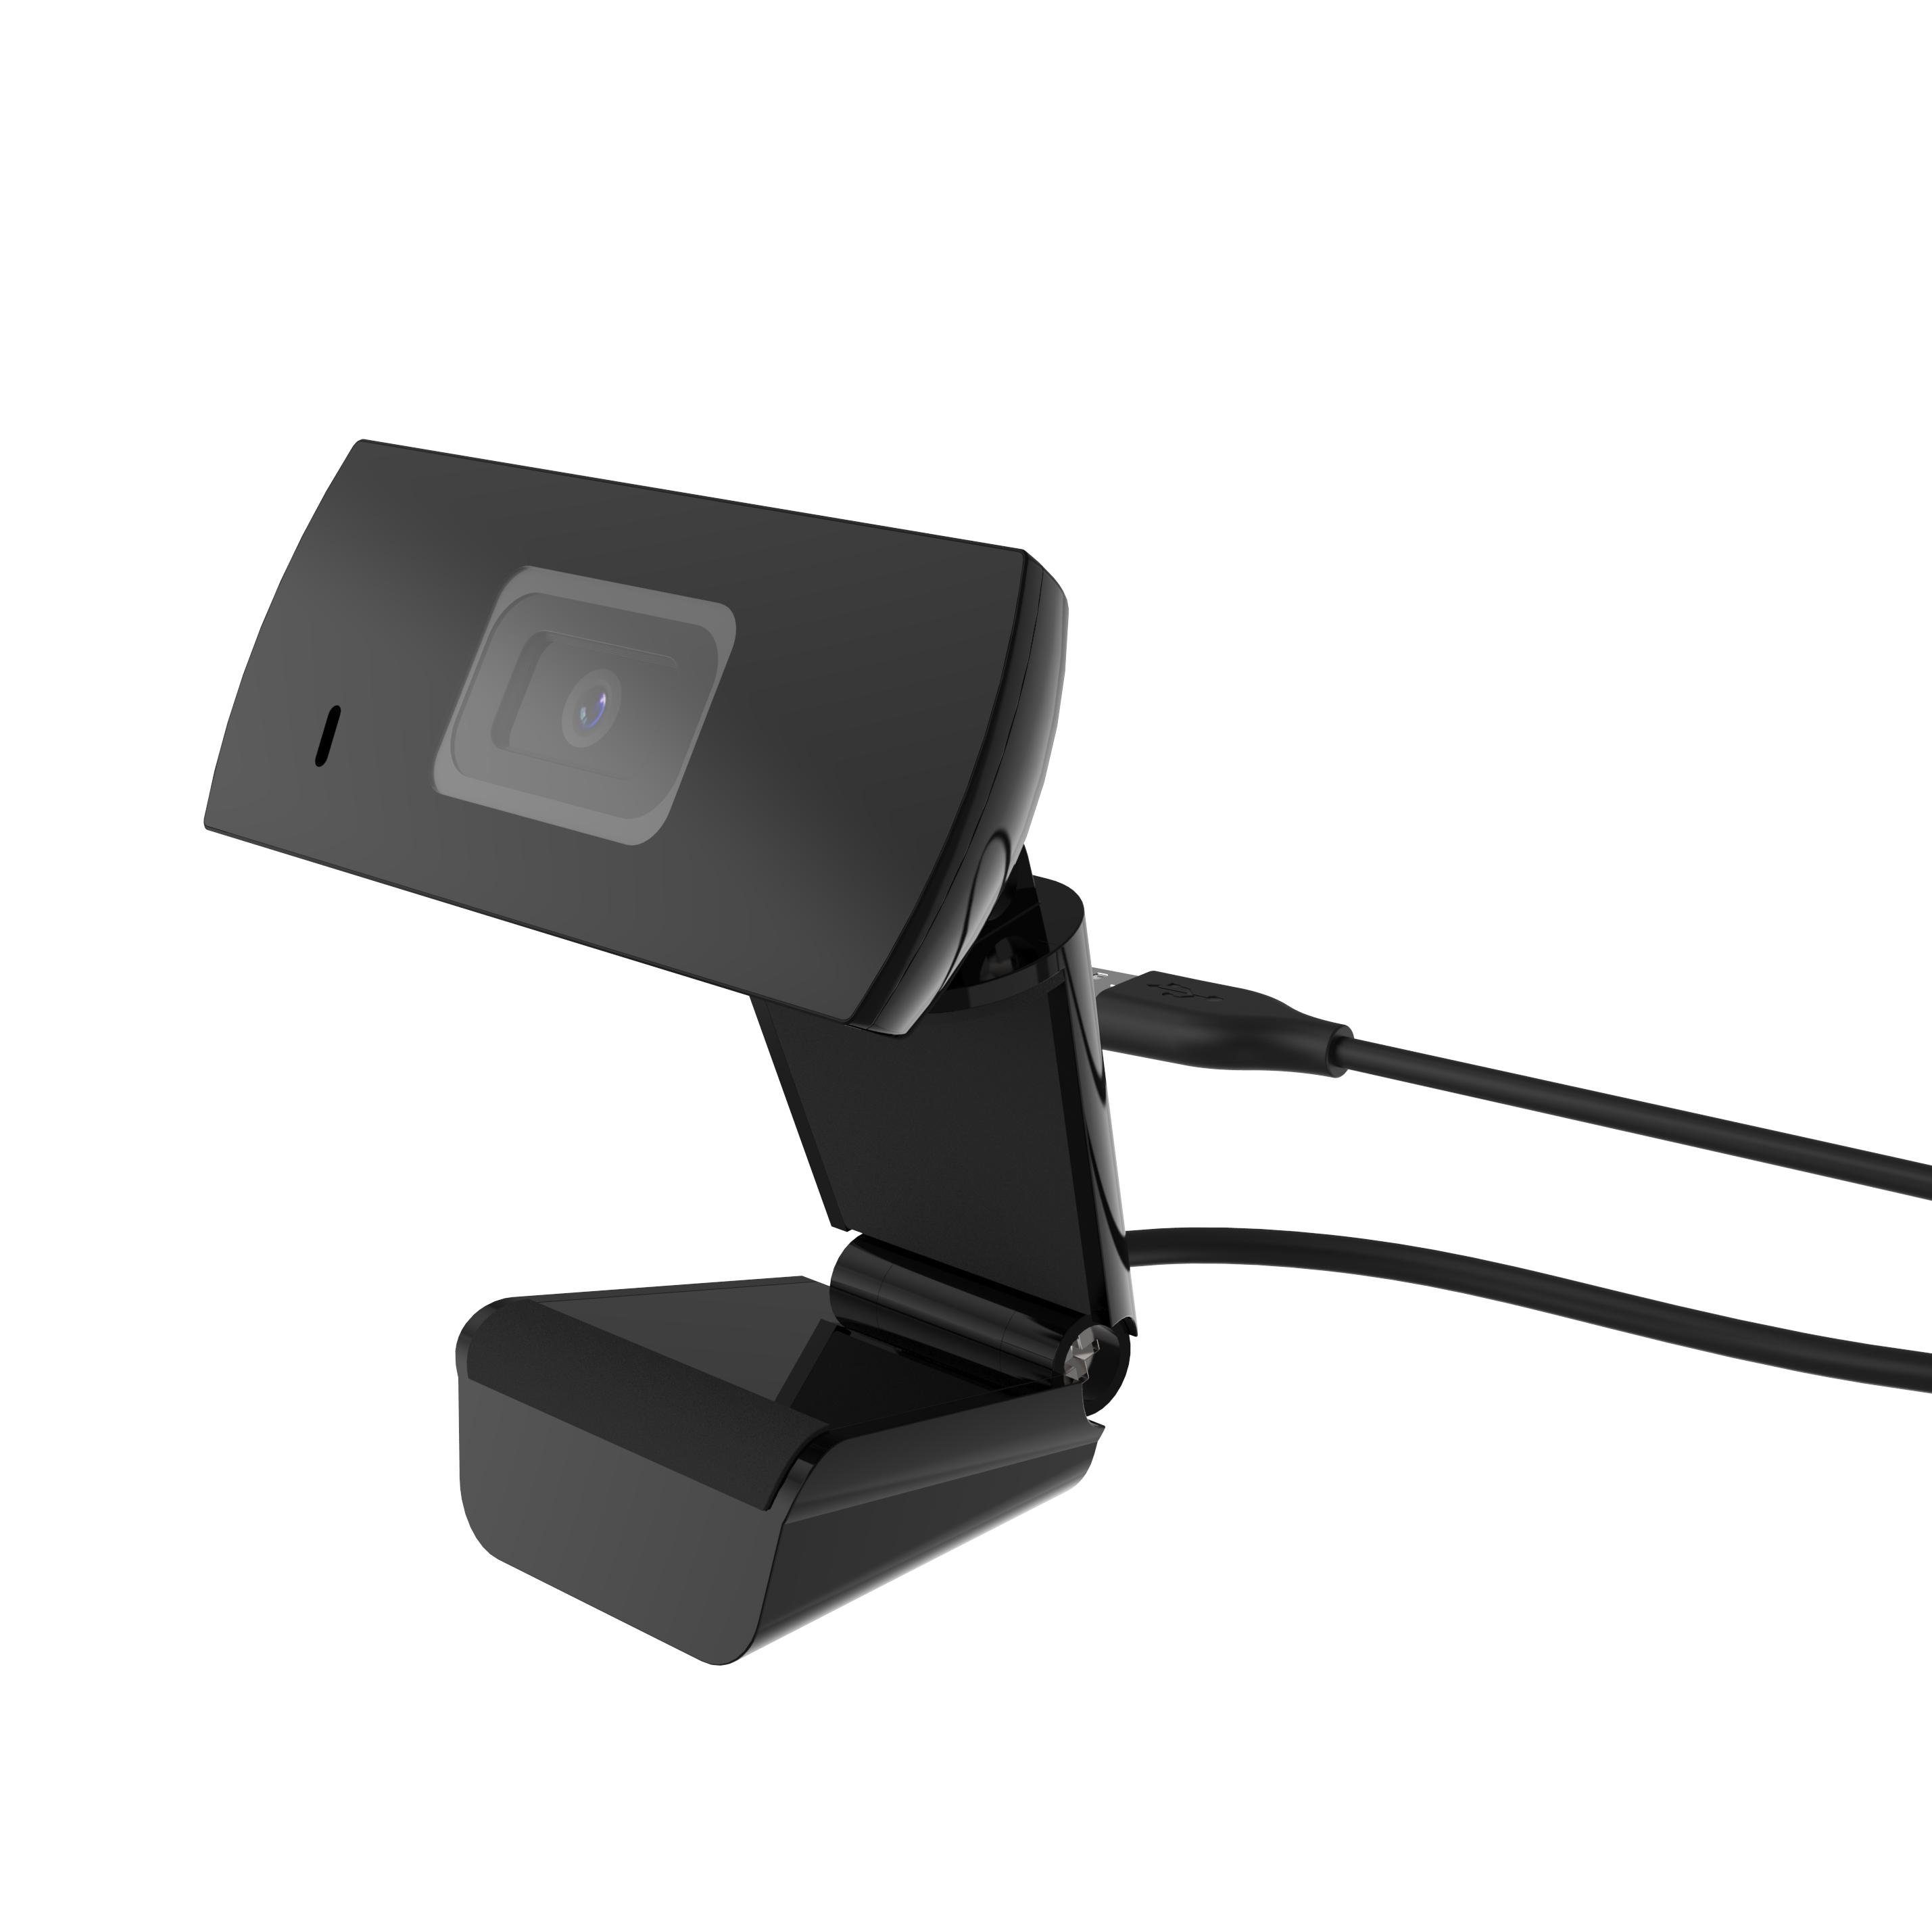 XLAYER 218162 & Full Installation) schwarz USB HD-Webcam (Full Plug Play HD